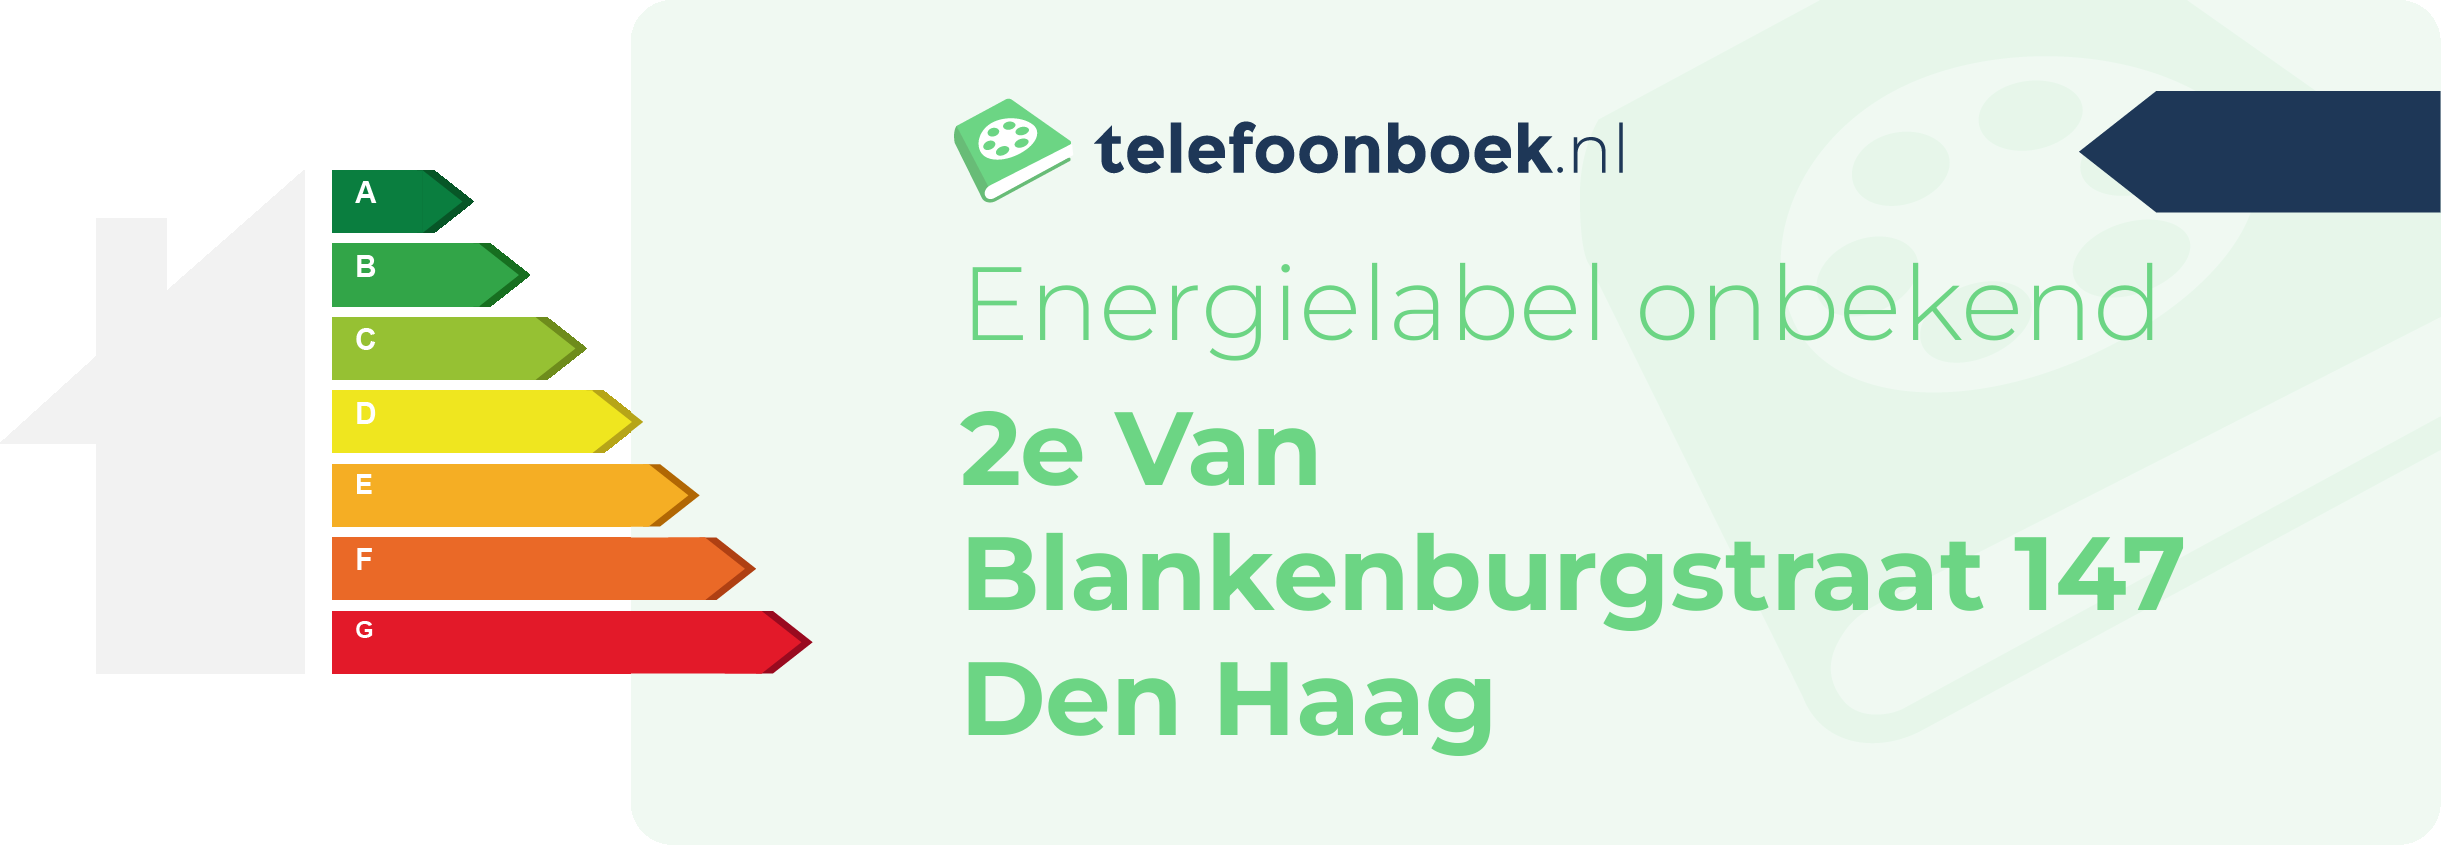 Energielabel 2e Van Blankenburgstraat 147 Den Haag